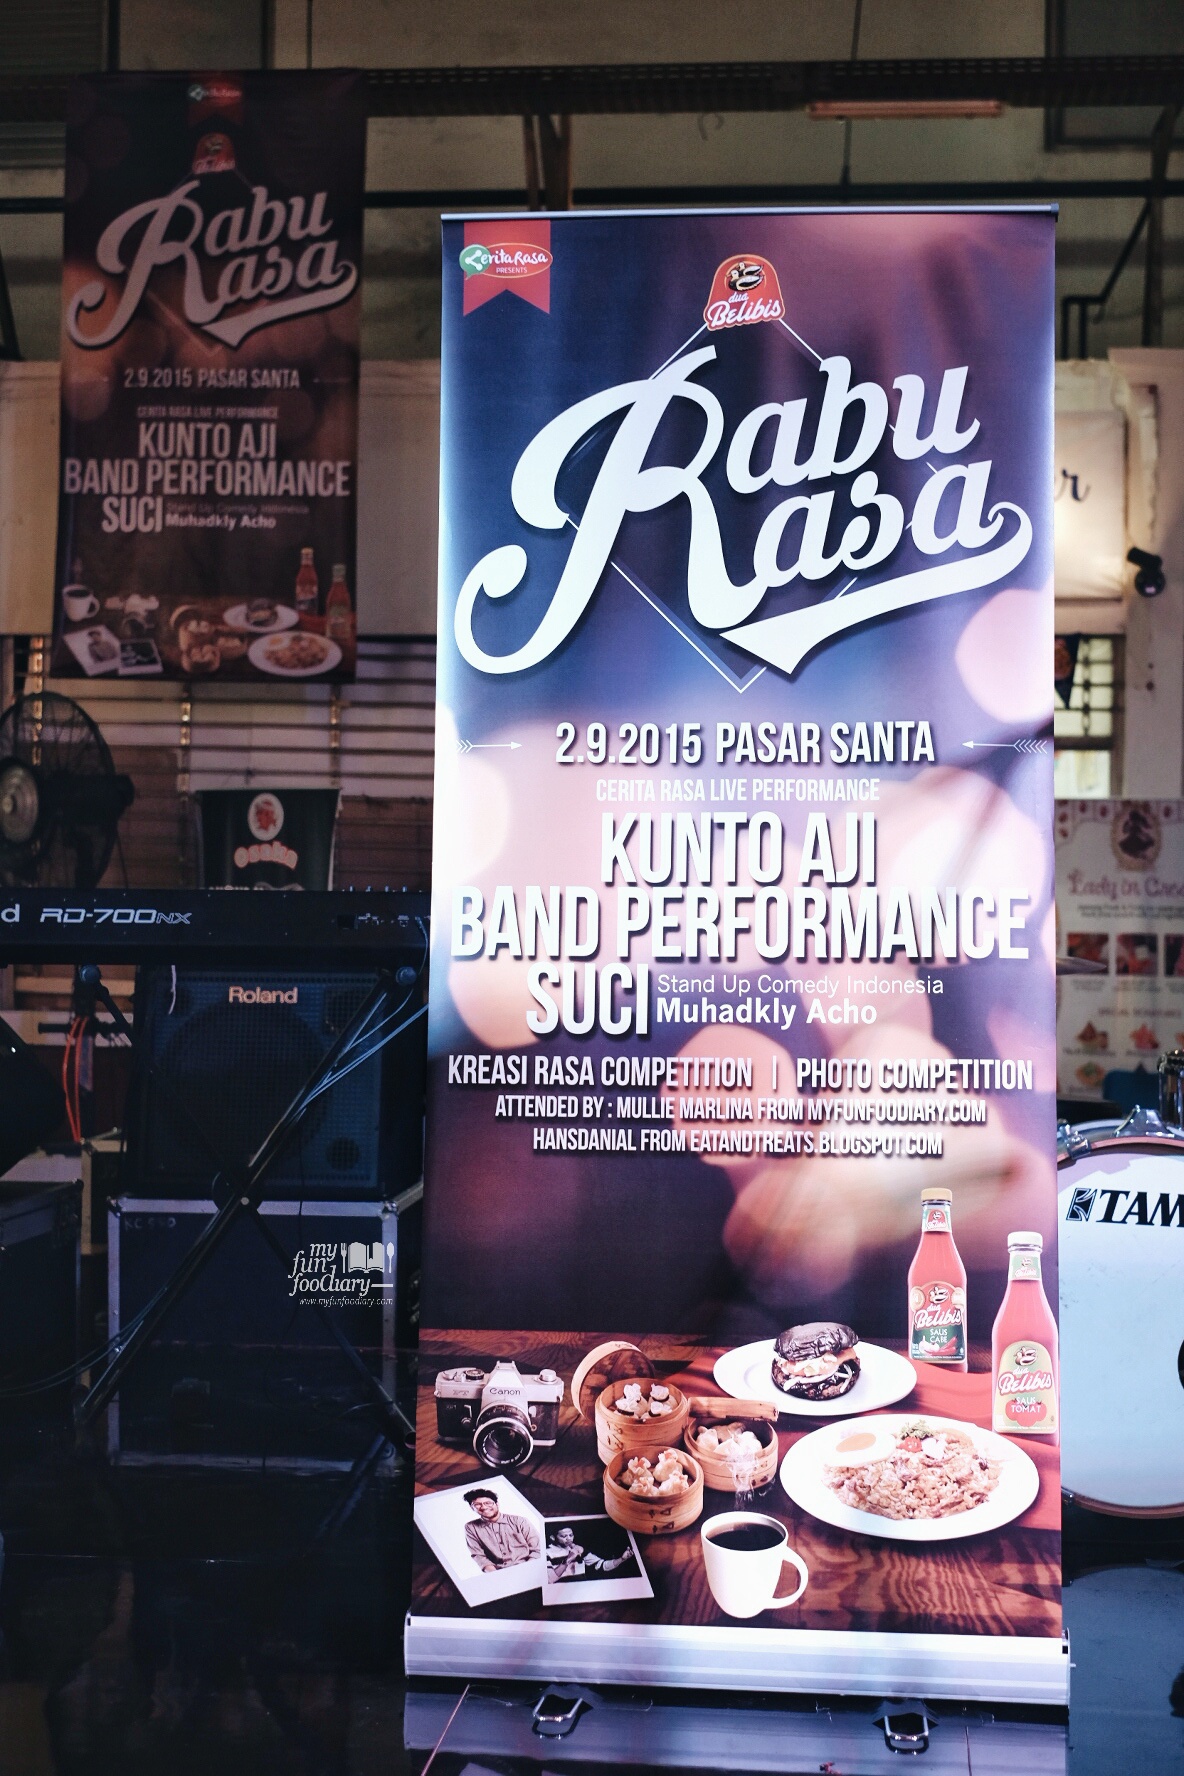 Special Event at Pasar Santa Rabu Rasa by Myfunfoodiary